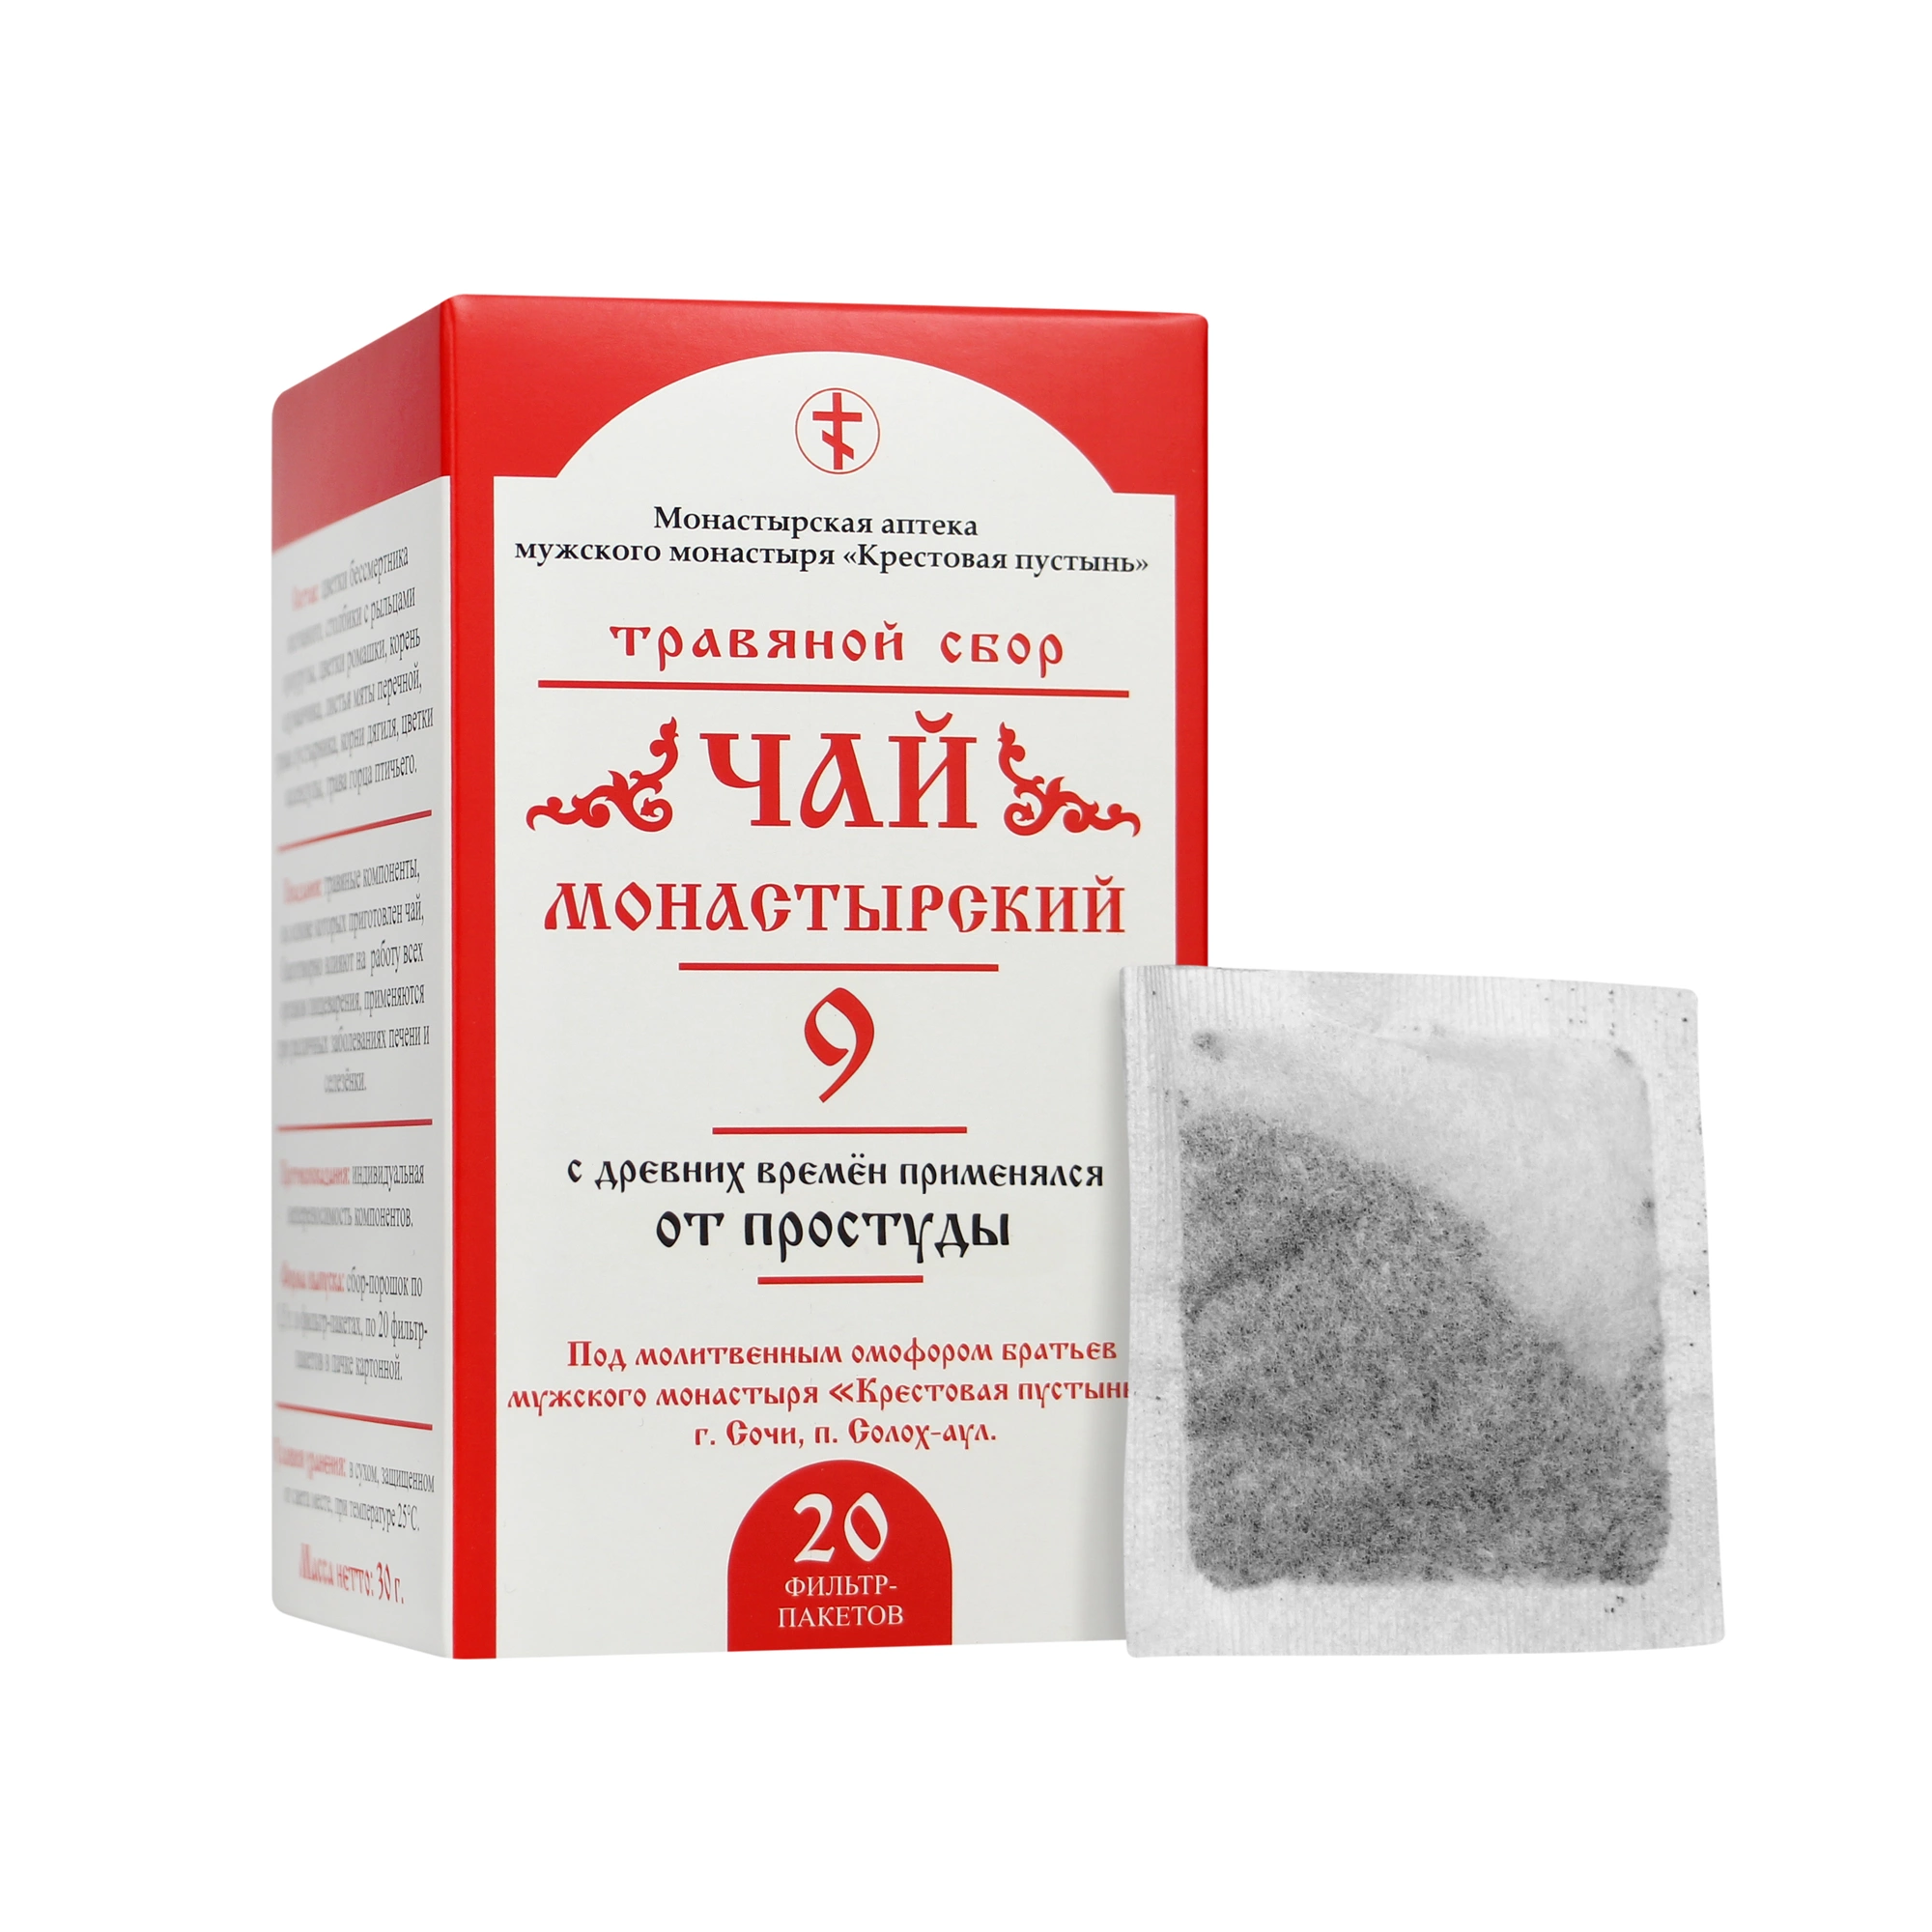 Чай Монастырский № 9, от простуды, 20 пакетиков, 30г, "Солох-Аул"